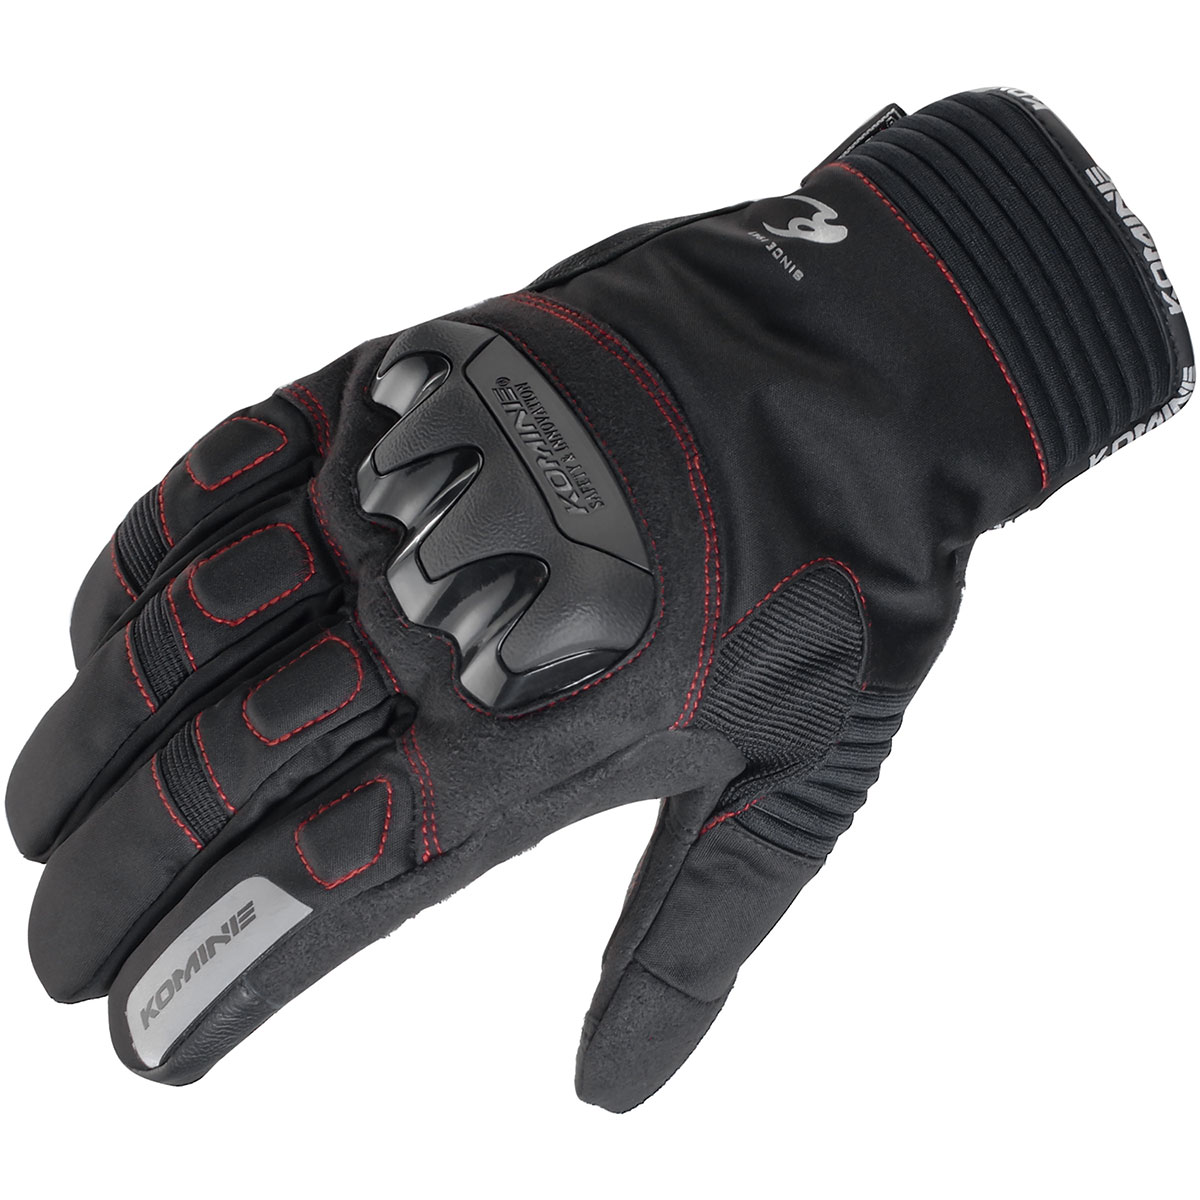 コミネ Komine バイク用 グローブ Gloves GK-834 引き出物 いよいよ人気ブランド プロテクトウィンターグローブ Lサイズ レッド ブラック L 06-834 RD BK